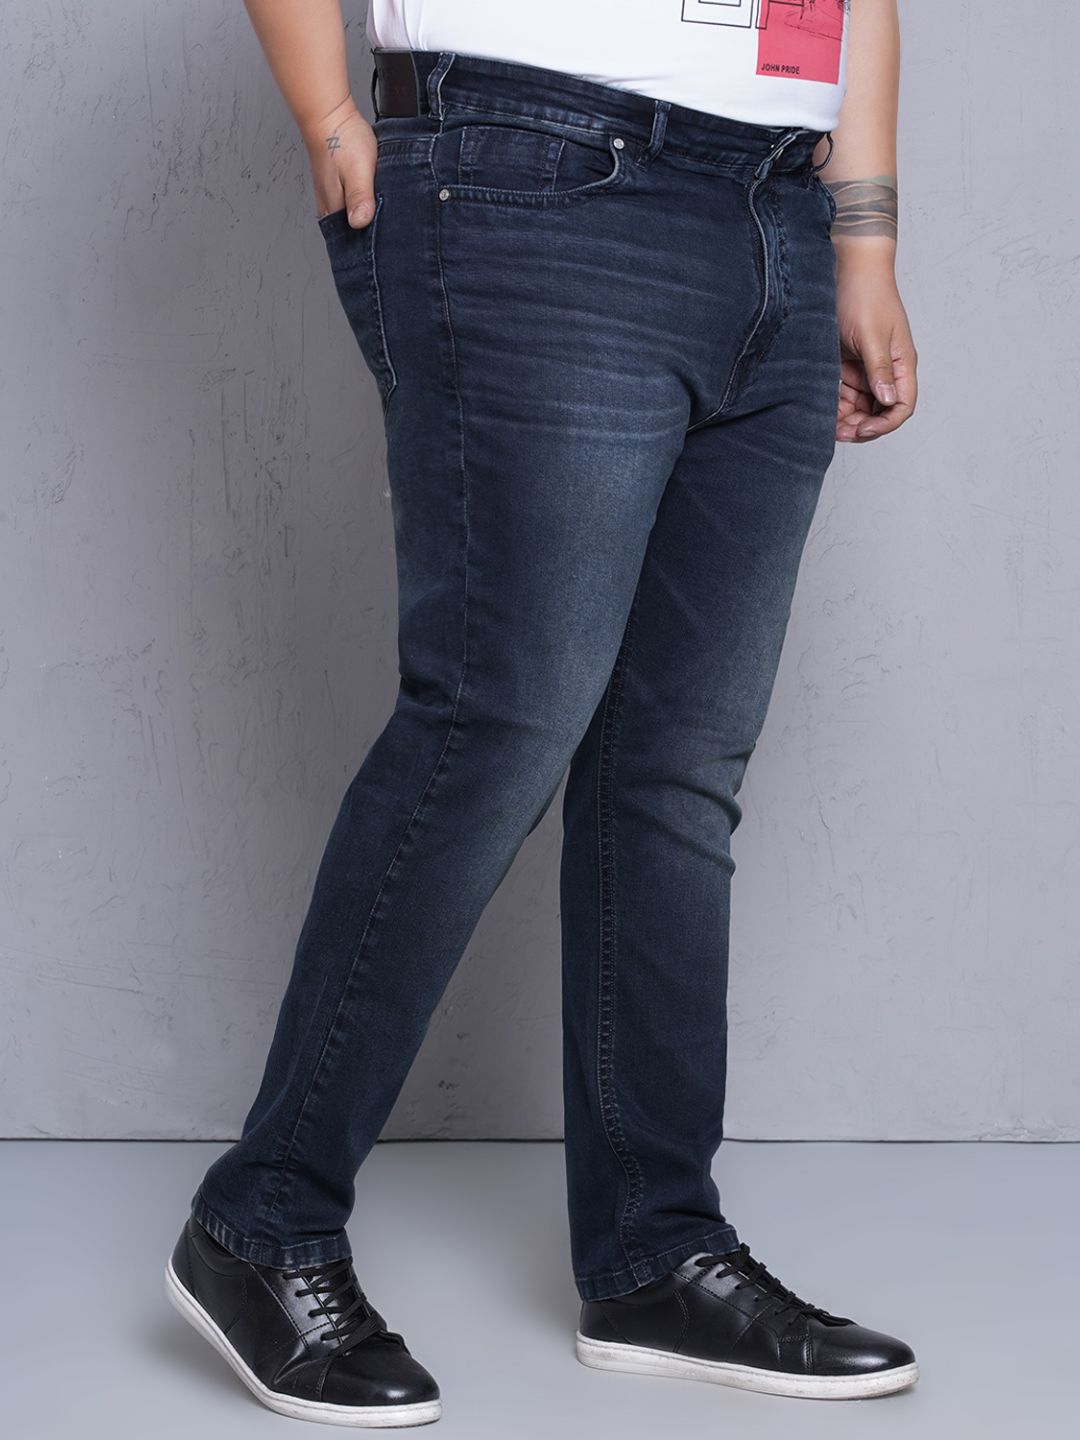 bottomwear/jeans/JPJ12436/jpj12436-3.jpg